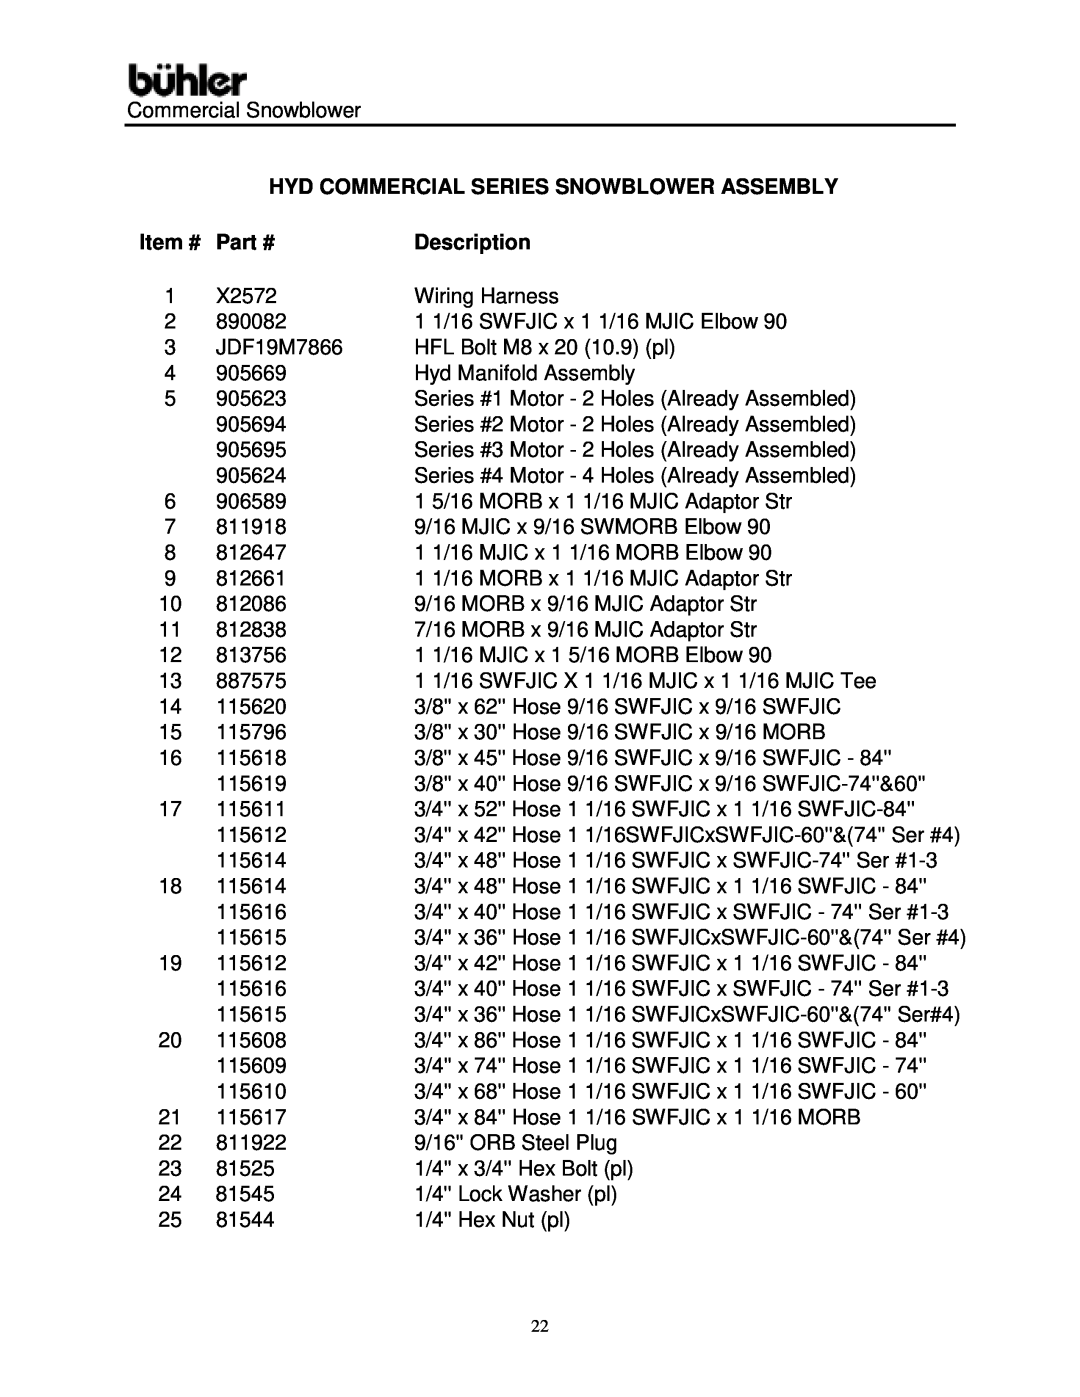 Buhler Commercial Snowblower warranty Hyd Commercial Series Snowblower Assembly, Item #, Description 